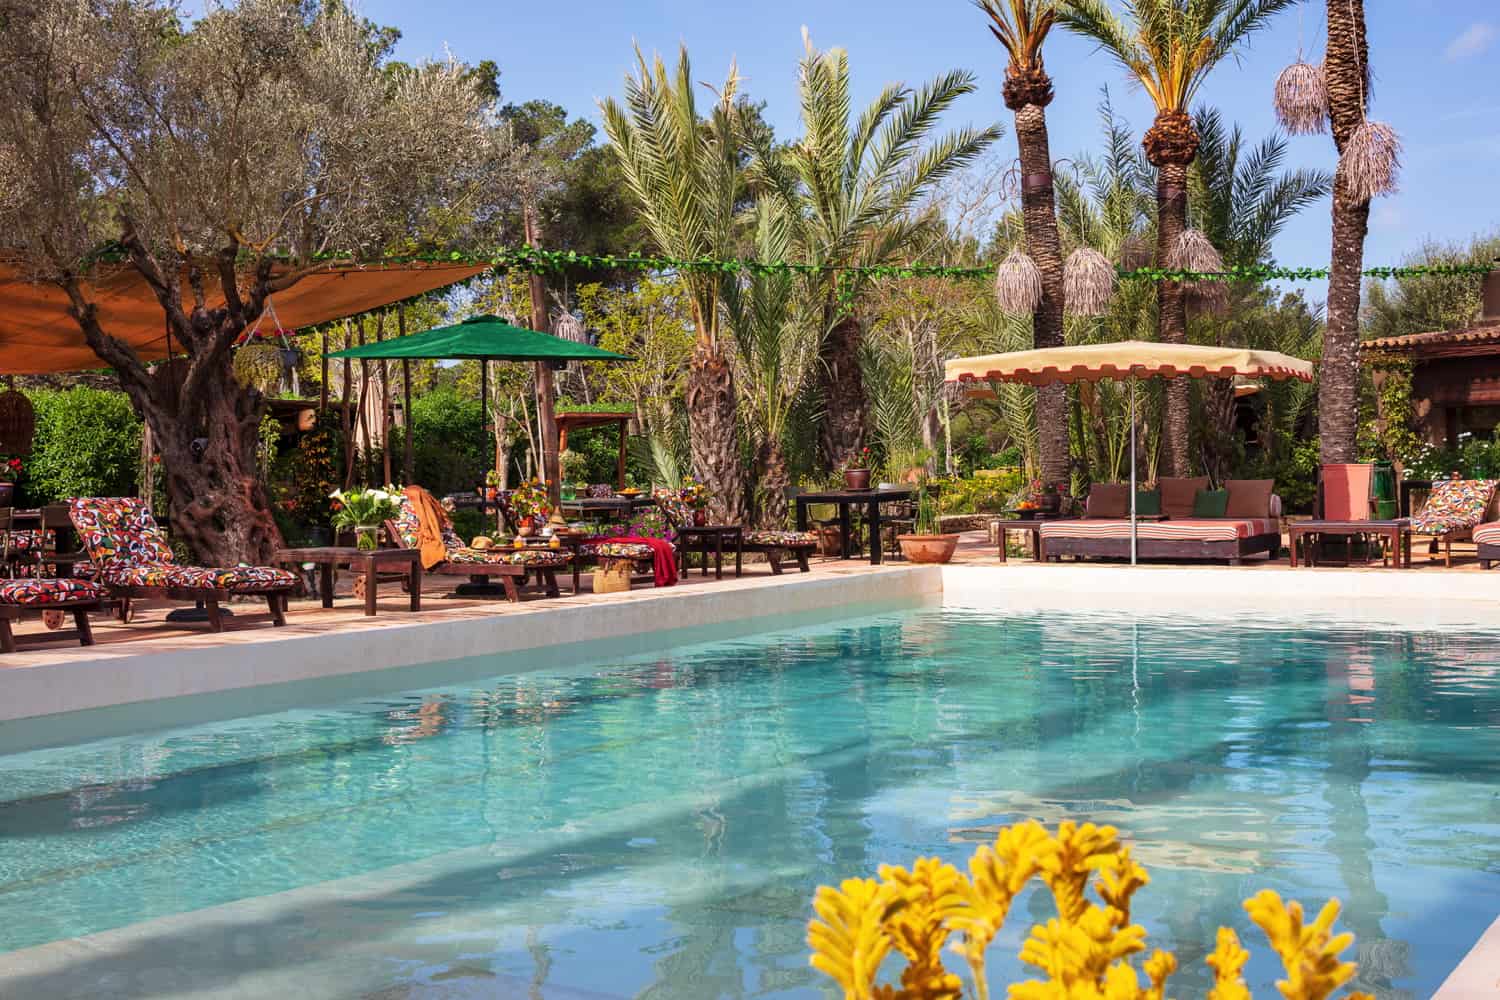 Ristoranti con piscina a Ibiza Agenda culturale ed eventi Ibiza Ibiza